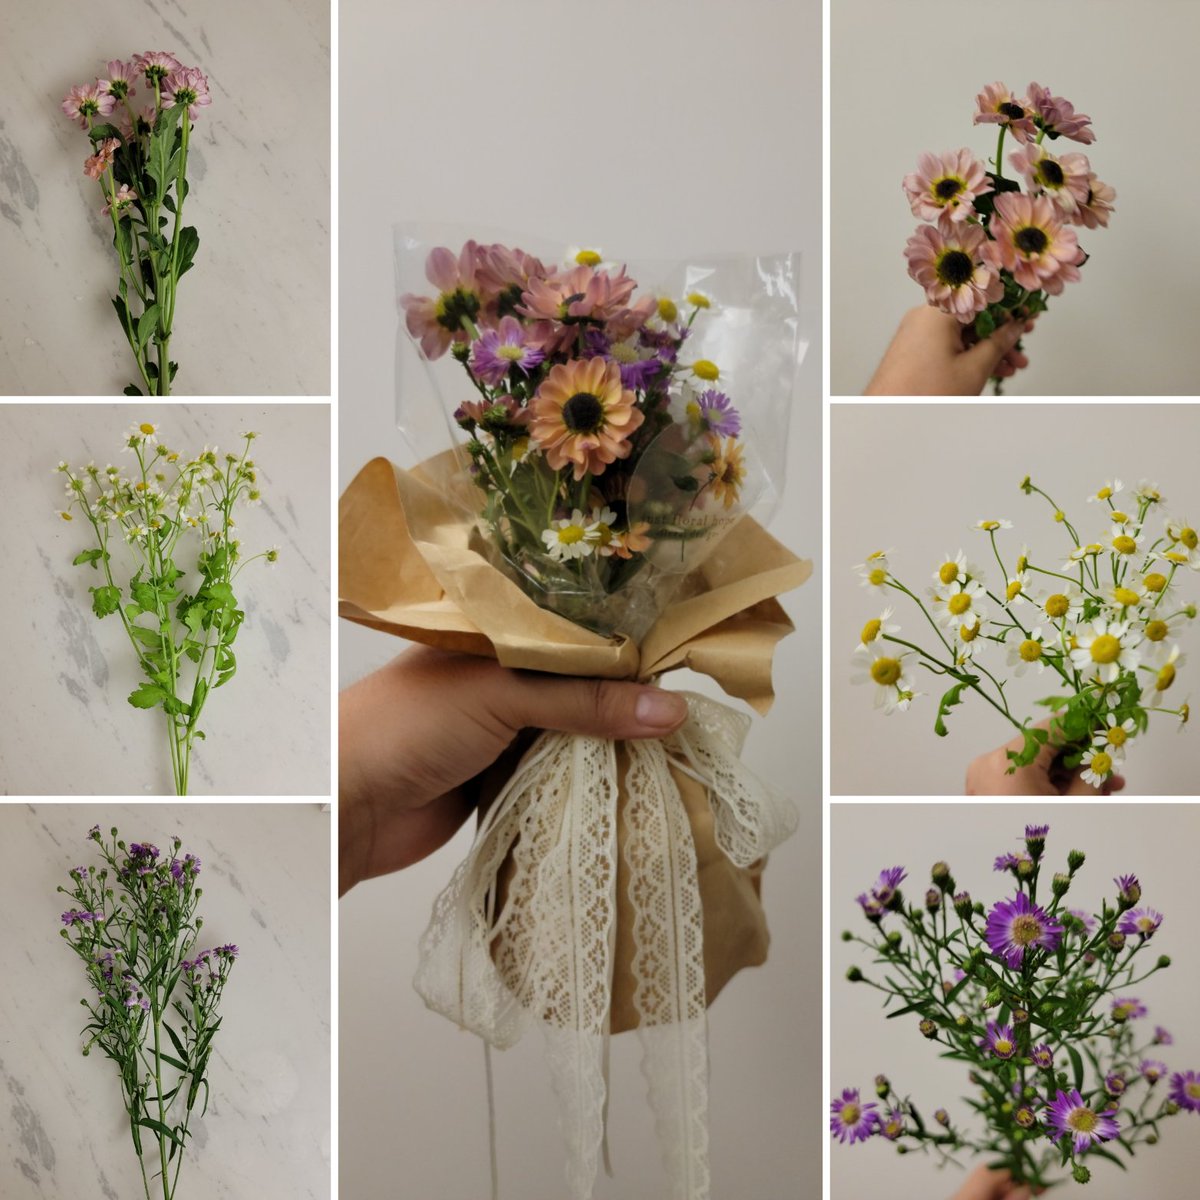 mini Spray mum bouquet 
#floral #florallover #floraldesign #minibouquet